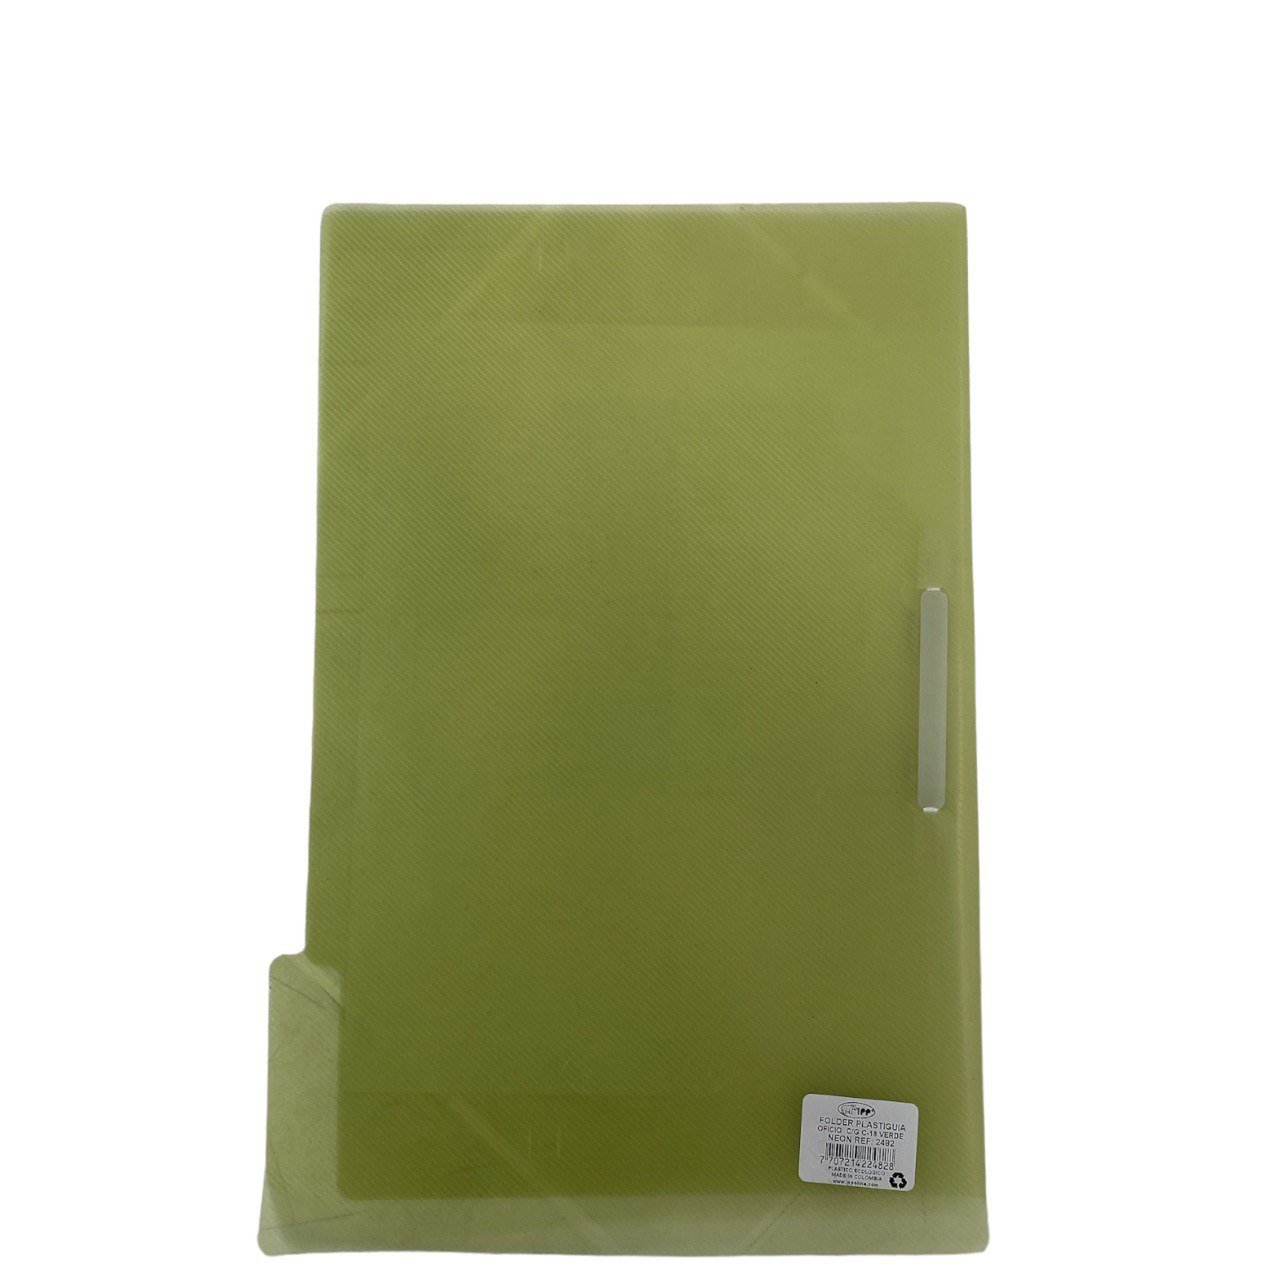 Carpeta Plastiguia Of Verde Neon C/G C18 Ipp liquidacion